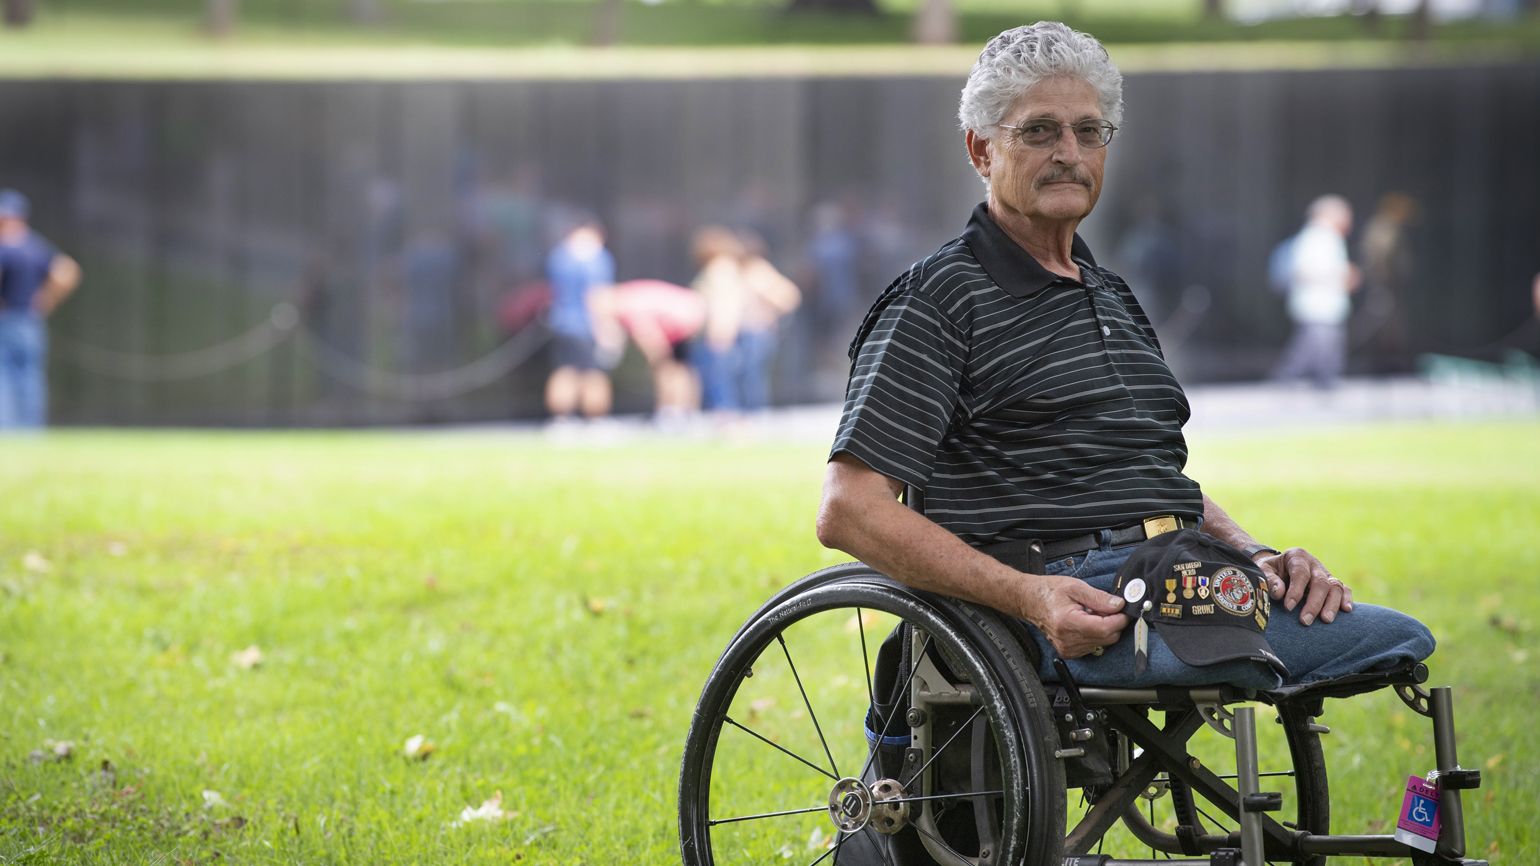 After 30 years, Eddie visits the Vietnam Veterans Memorial